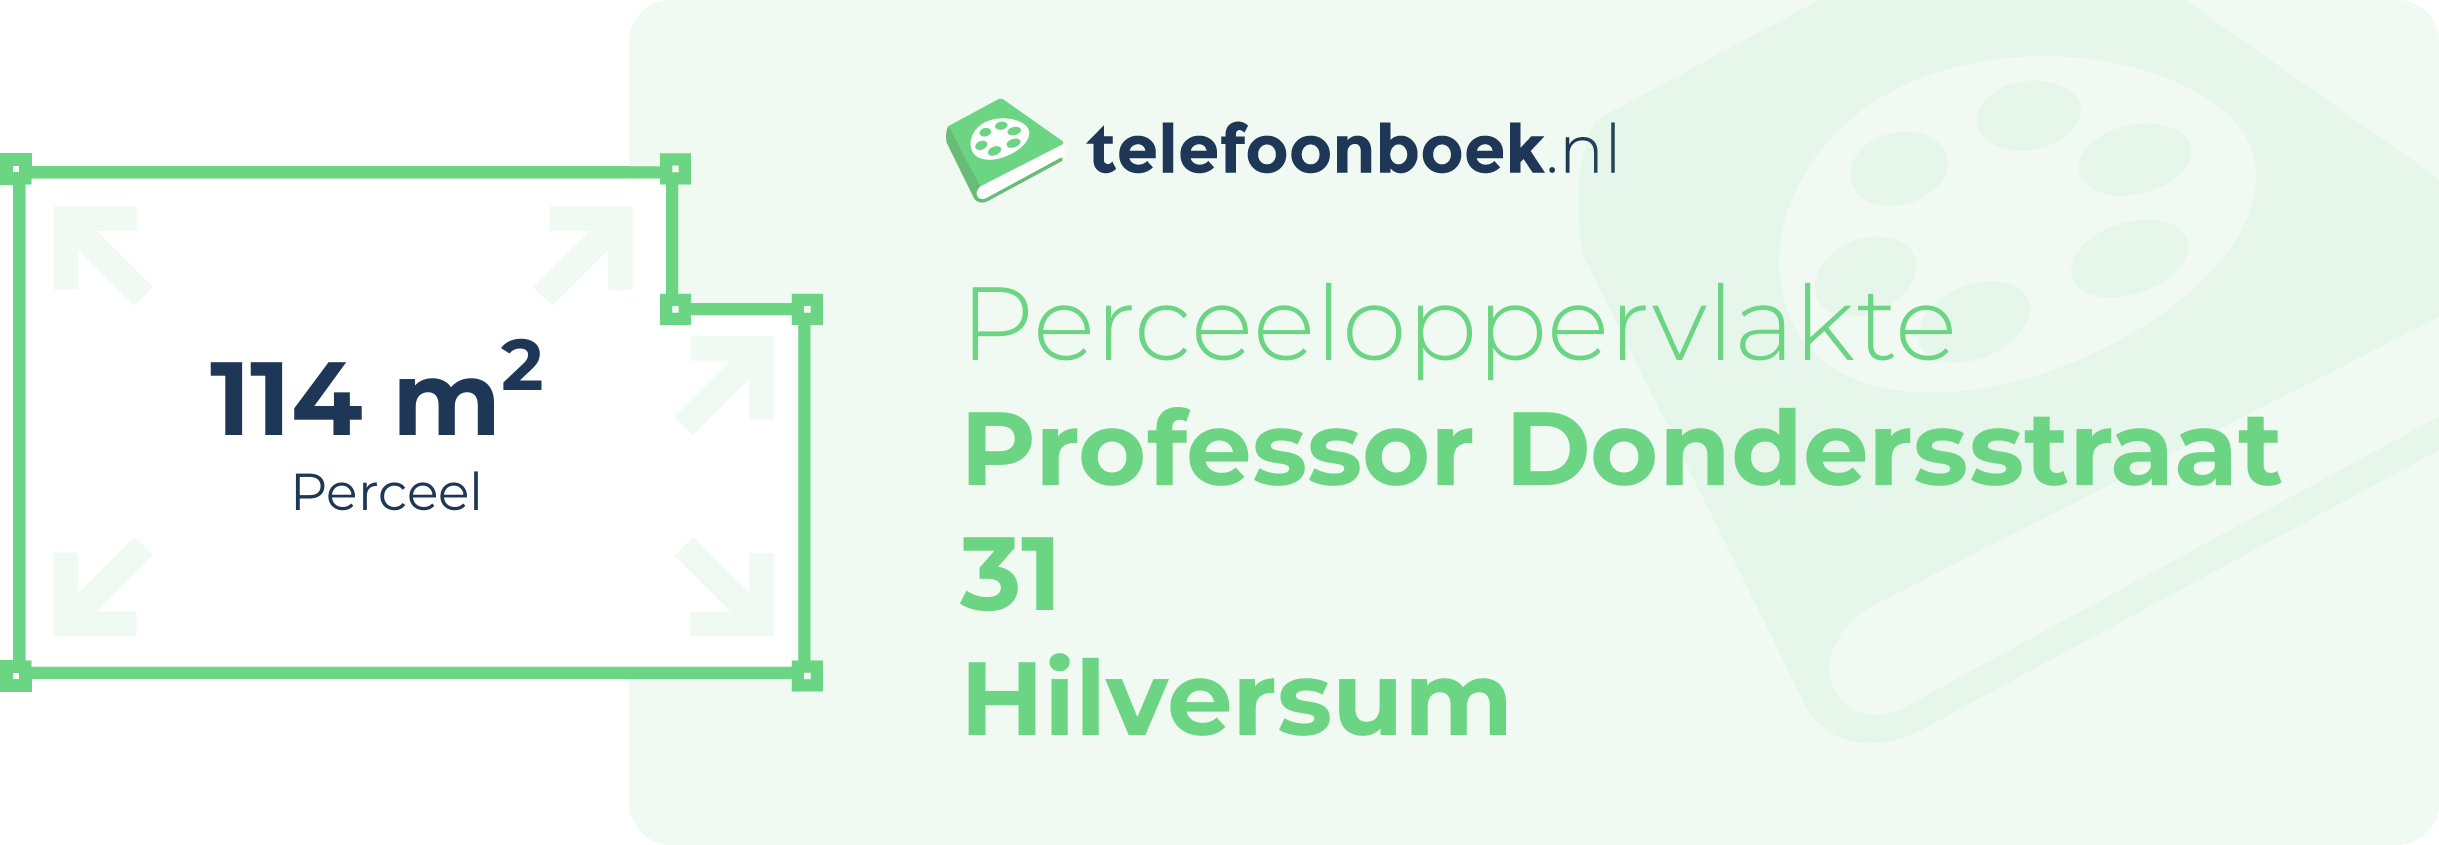 Perceeloppervlakte Professor Dondersstraat 31 Hilversum